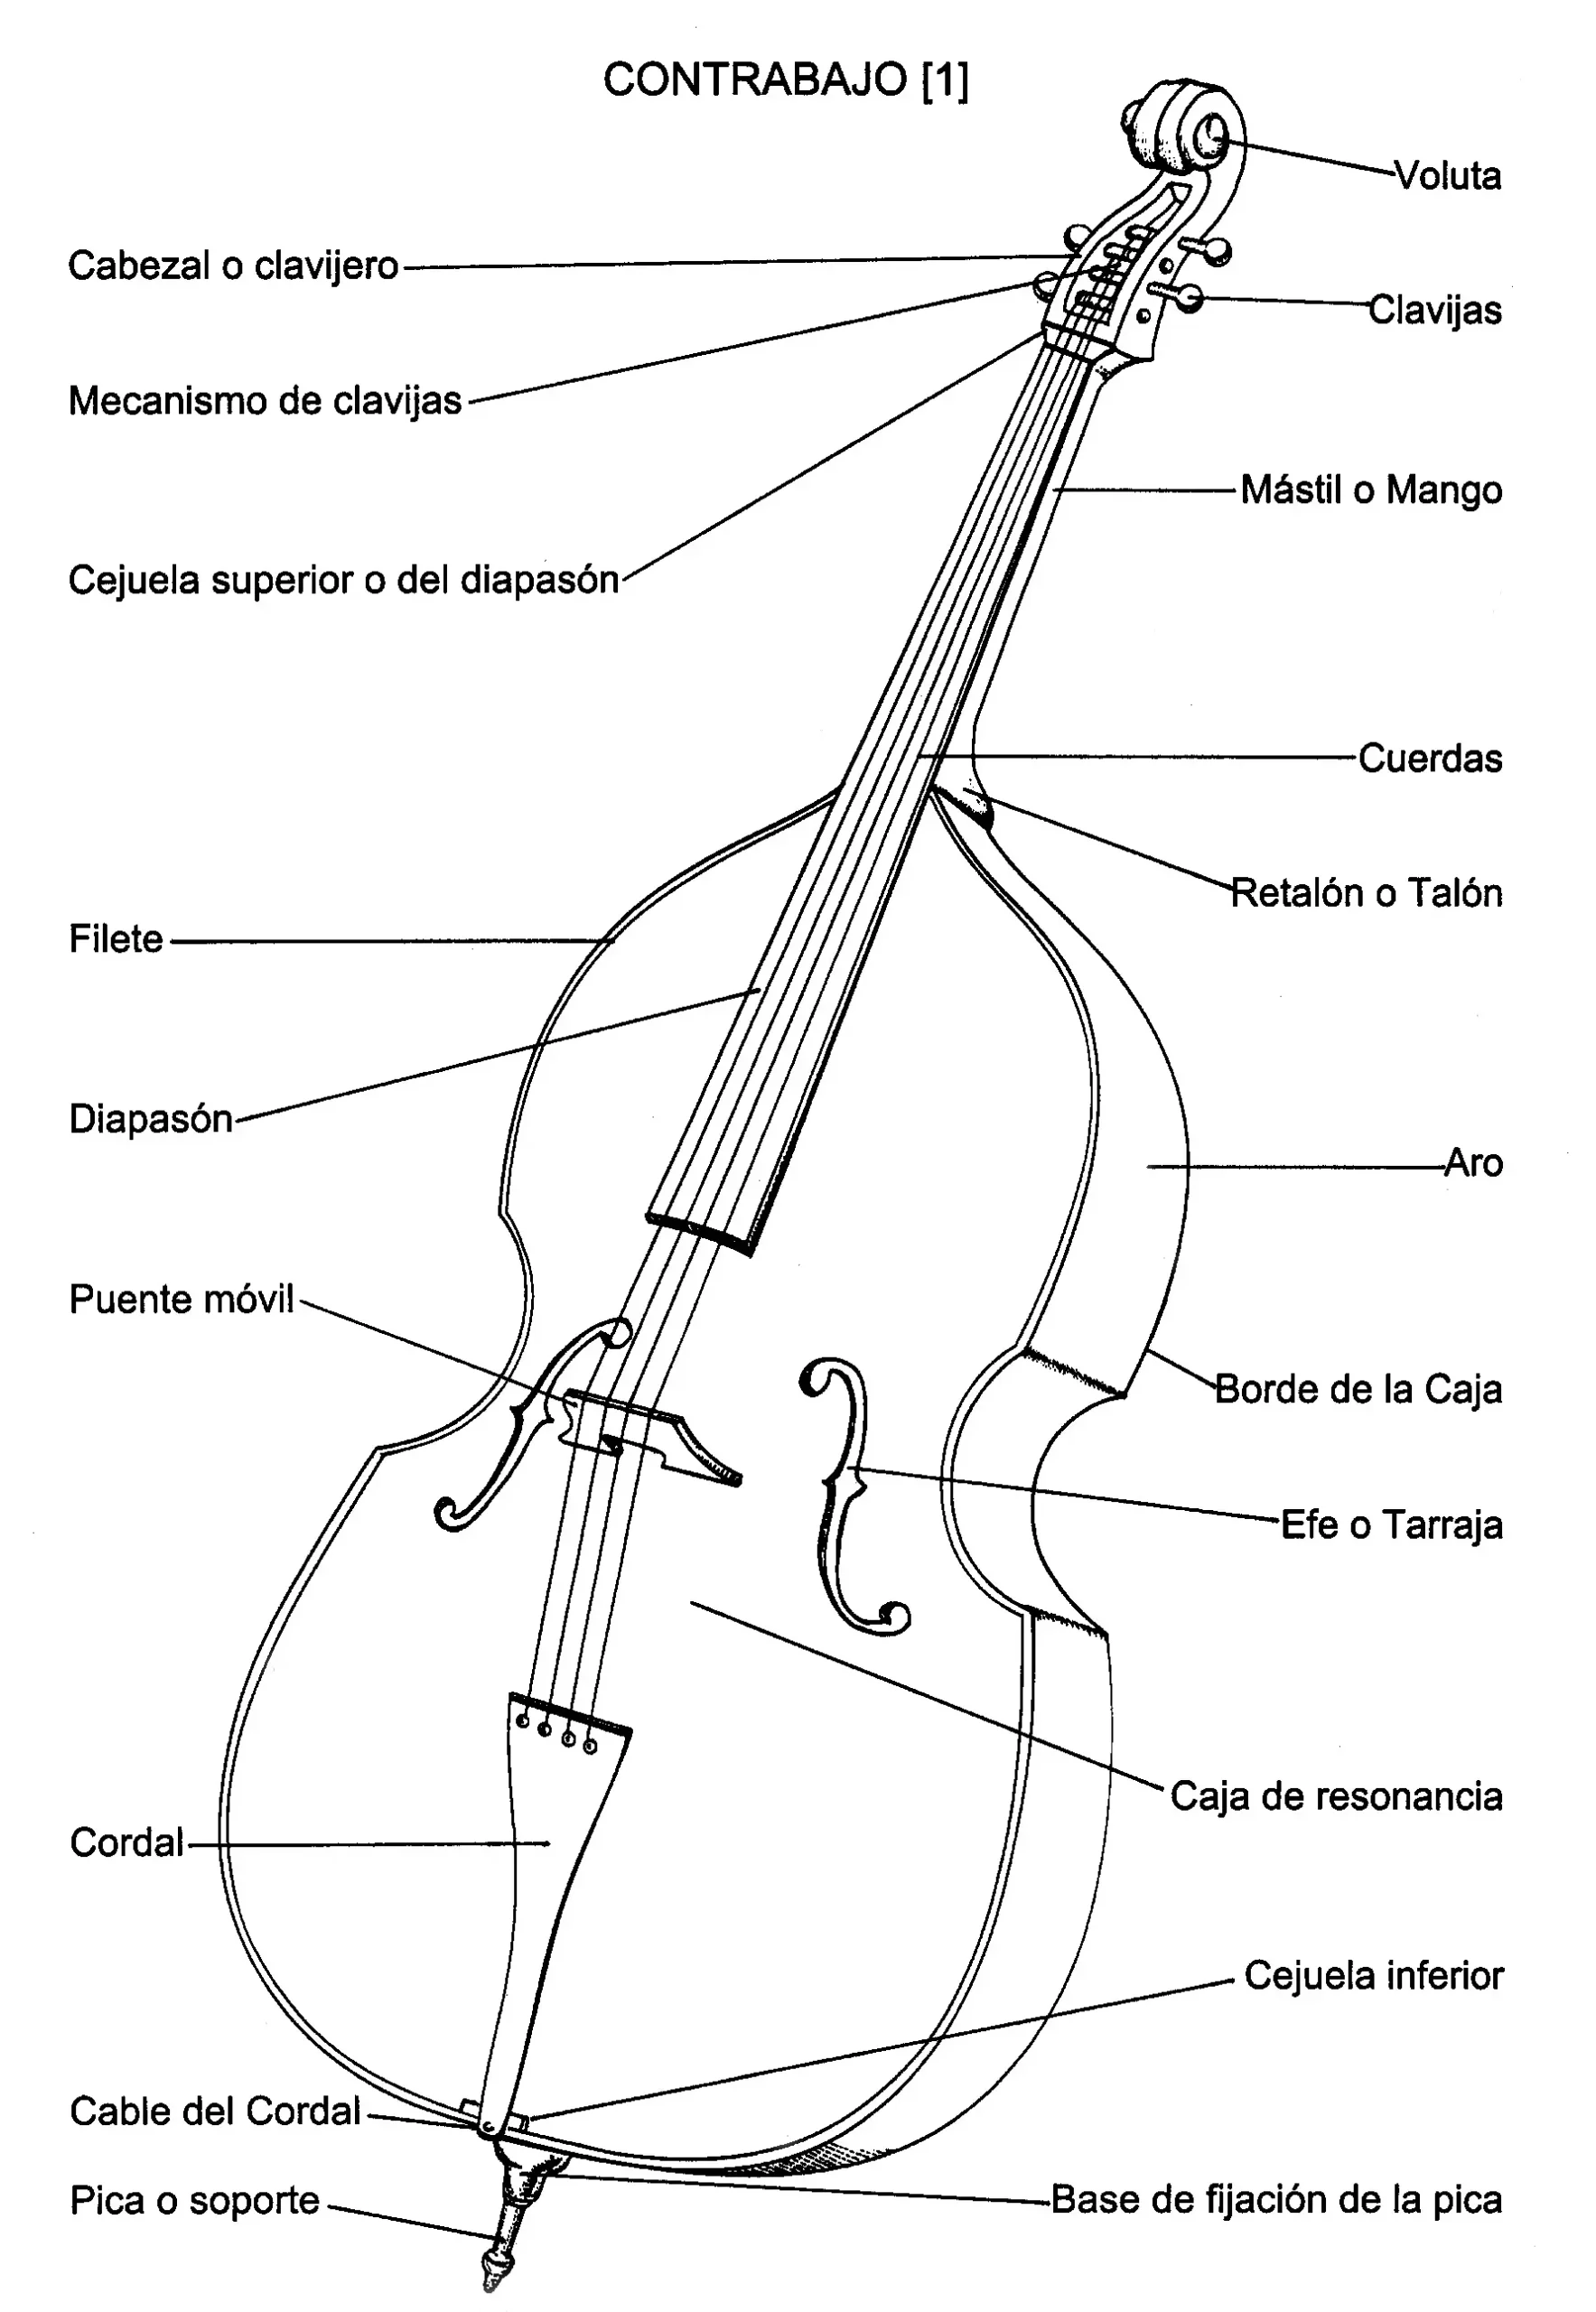 afinacion de contrabajo y violin - Por qué el contrabajo se afina en cuartas